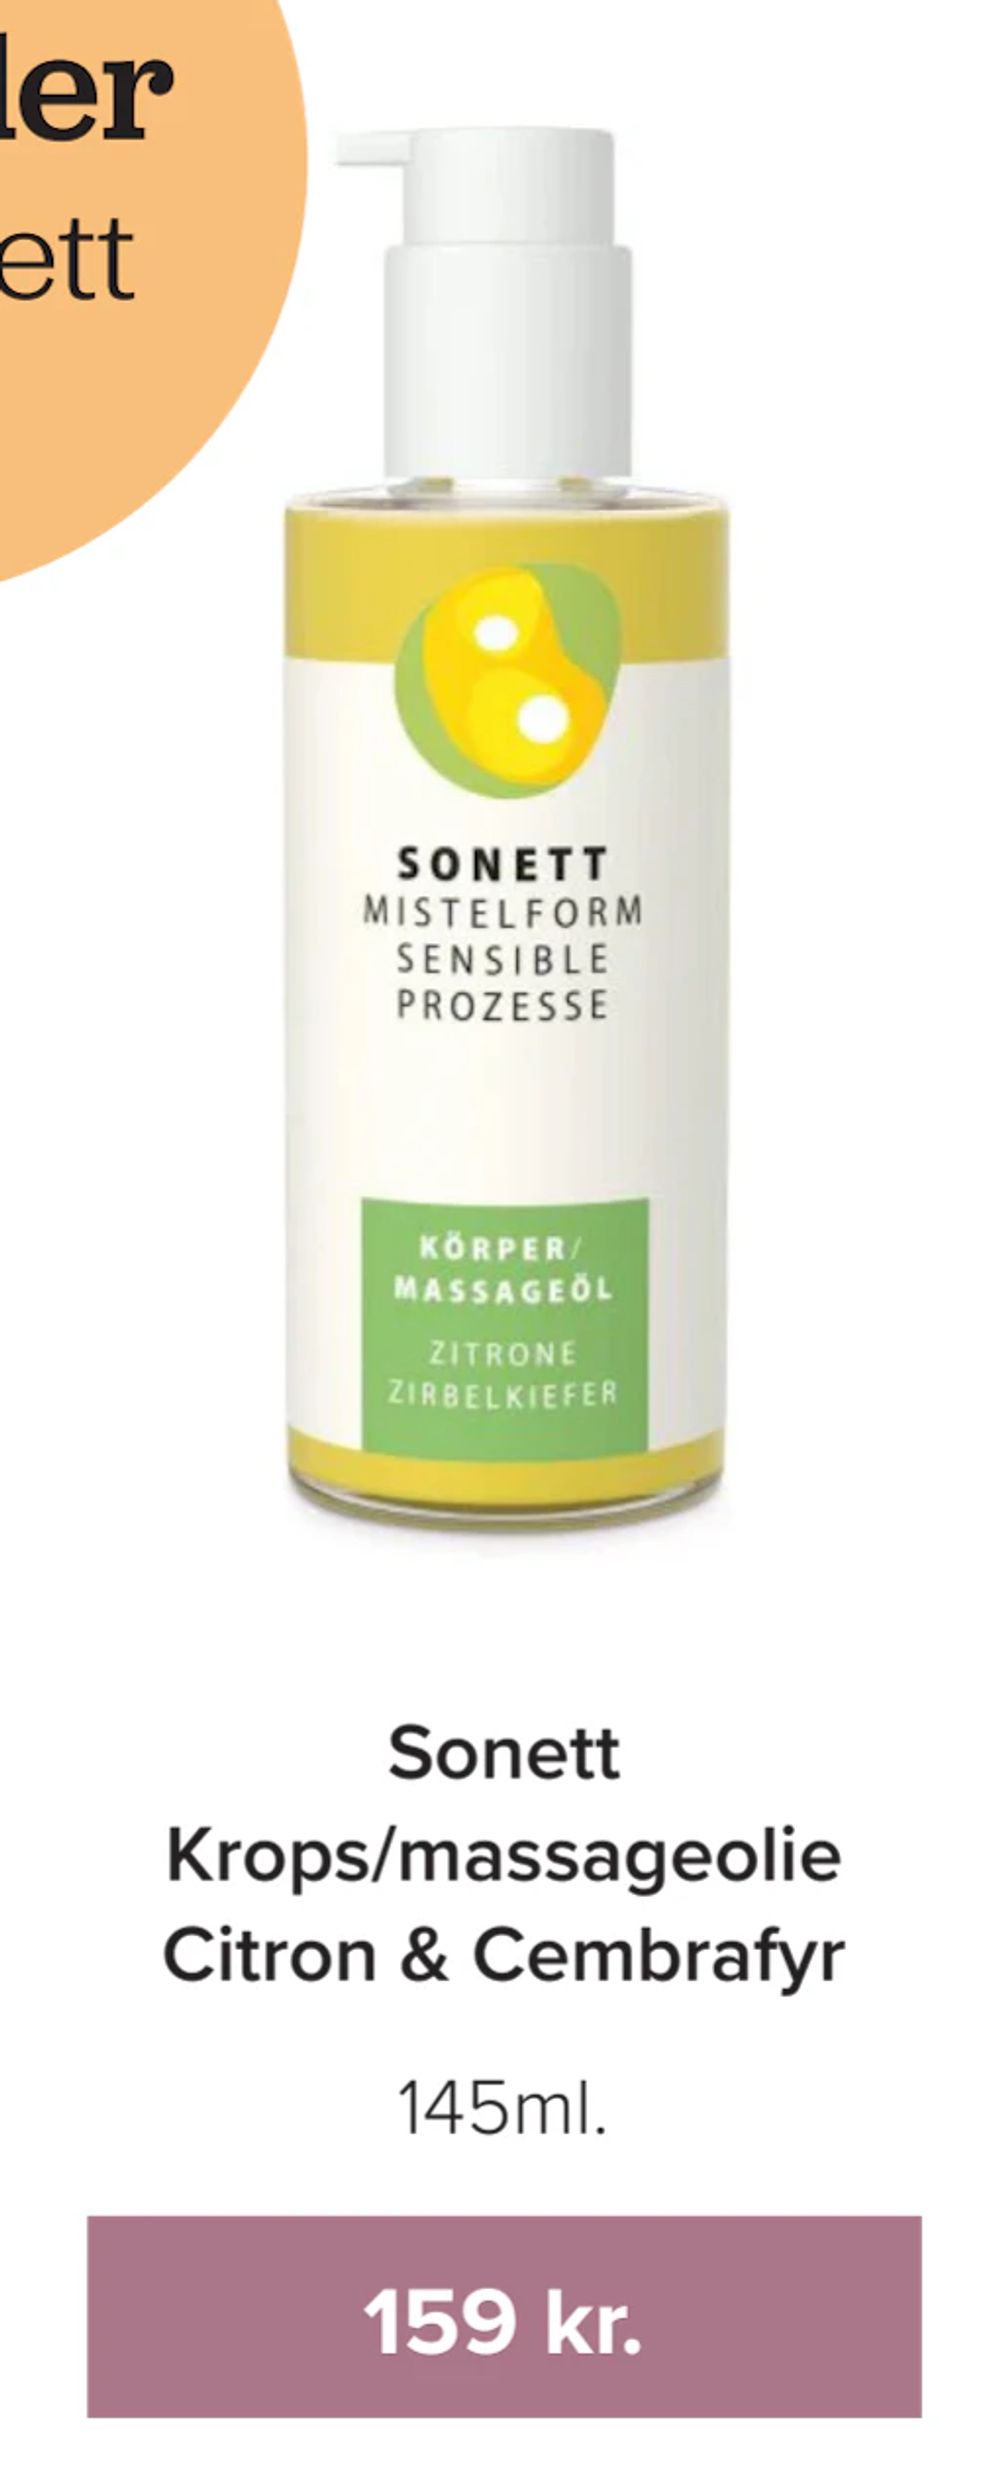 Tilbud på Sonett Krops/massageolie Citron & Cembrafyr fra Helsemin til 159 kr.